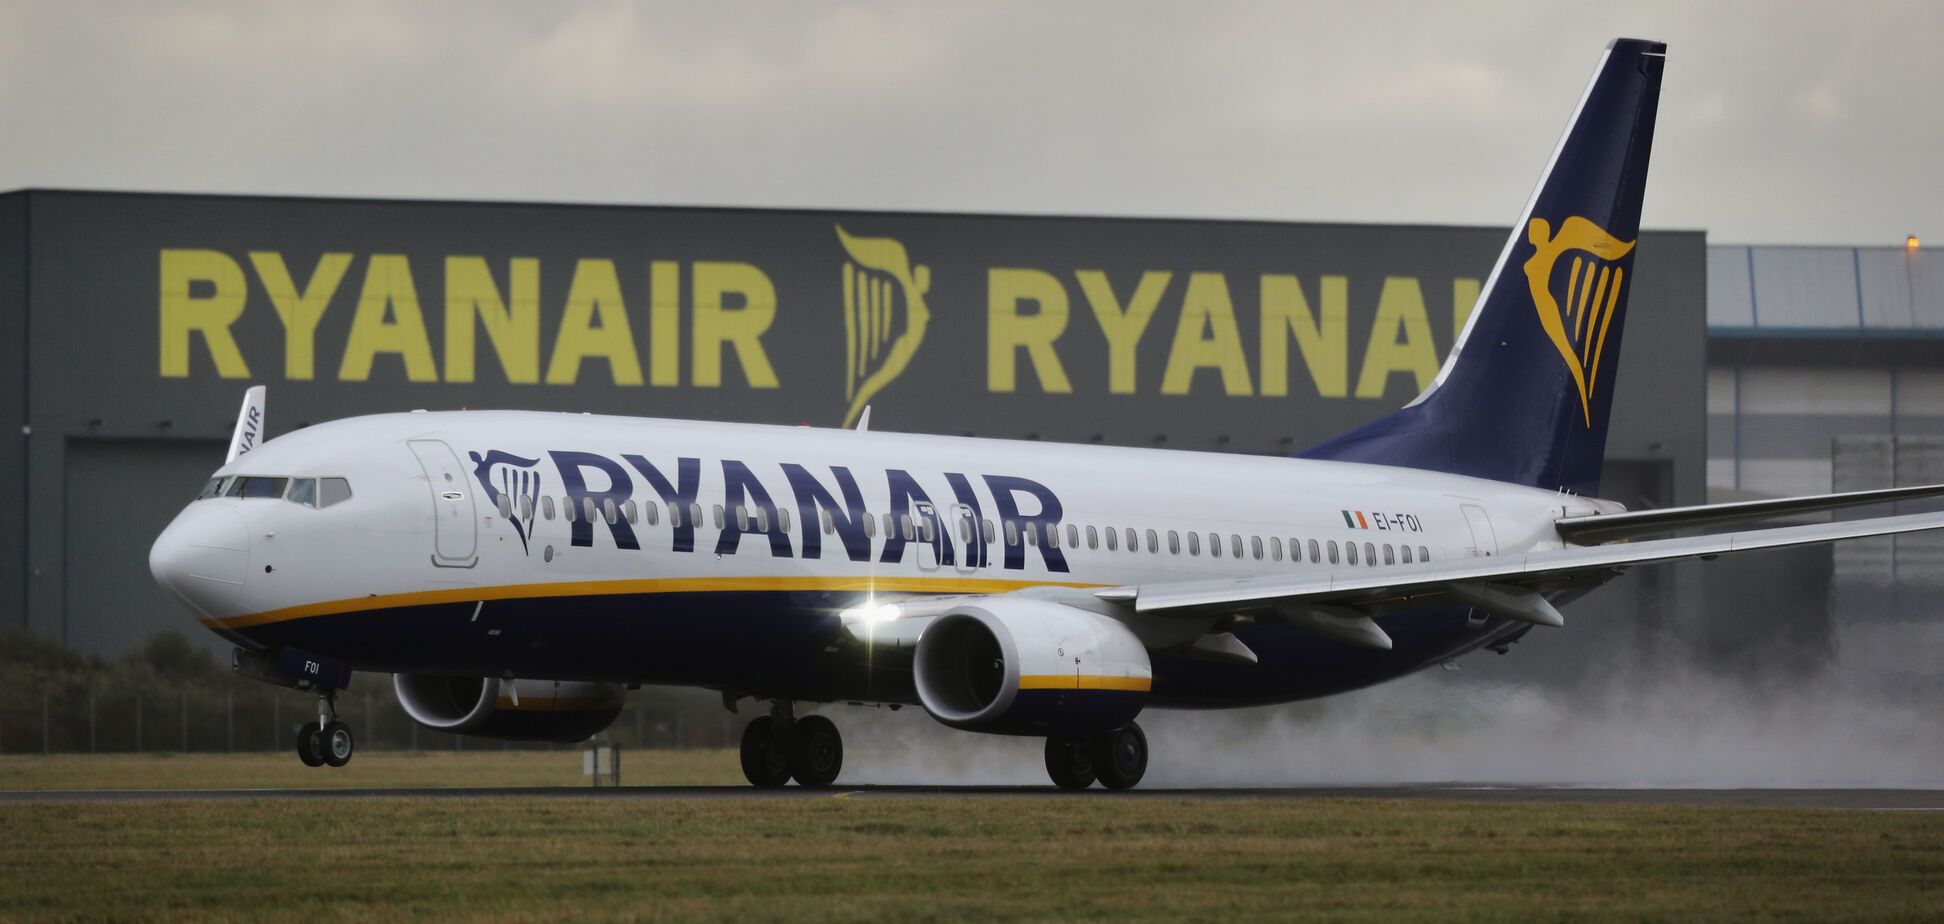 Красиві дівчата і дешеве пиво: в Британії розрекламували Україну після приходу Ryanair